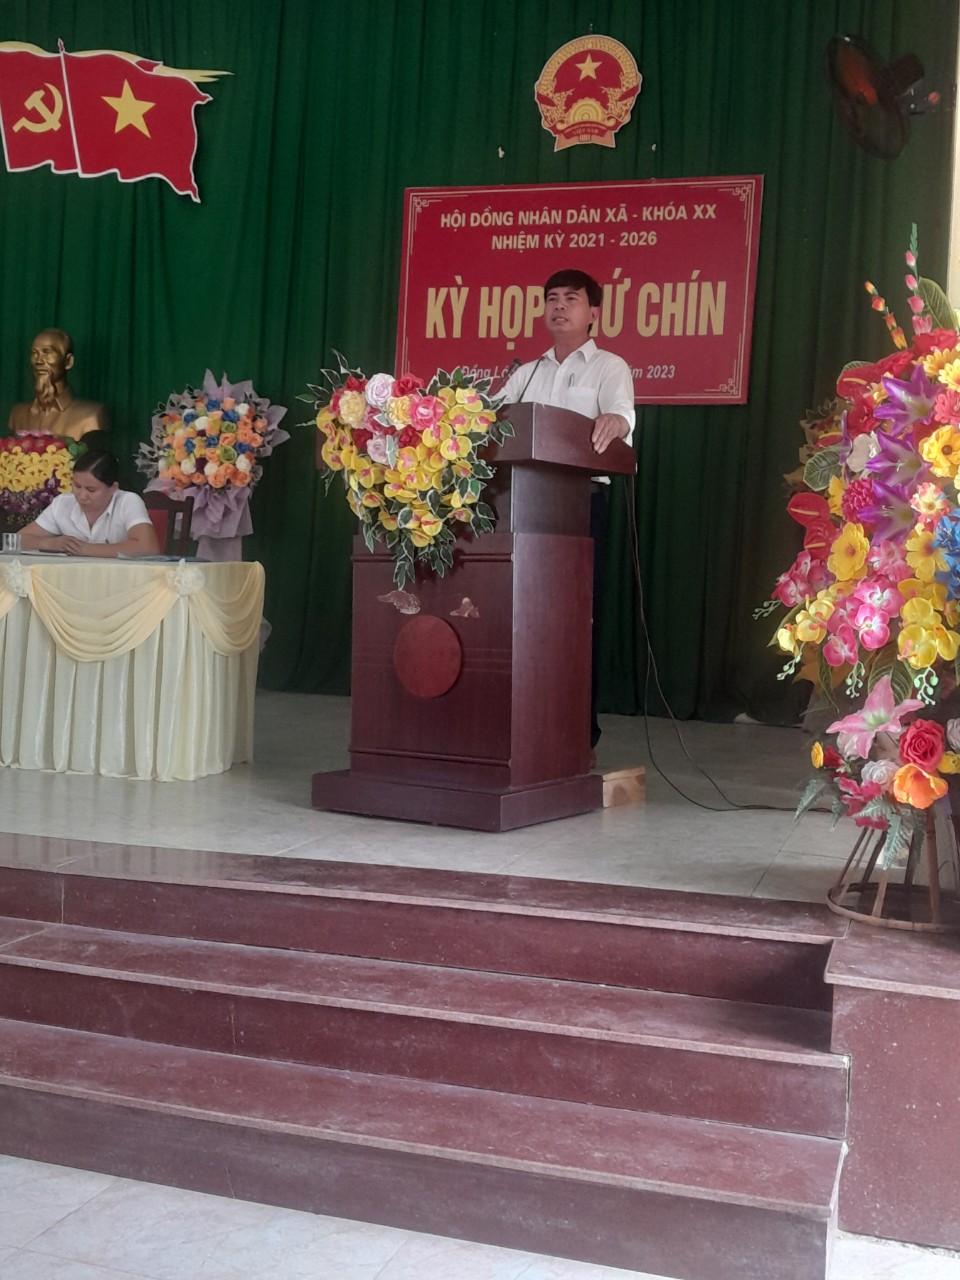 HĐND xã Đồng Lộc, khóa XX  tổ chức kỳ họp thứ chín